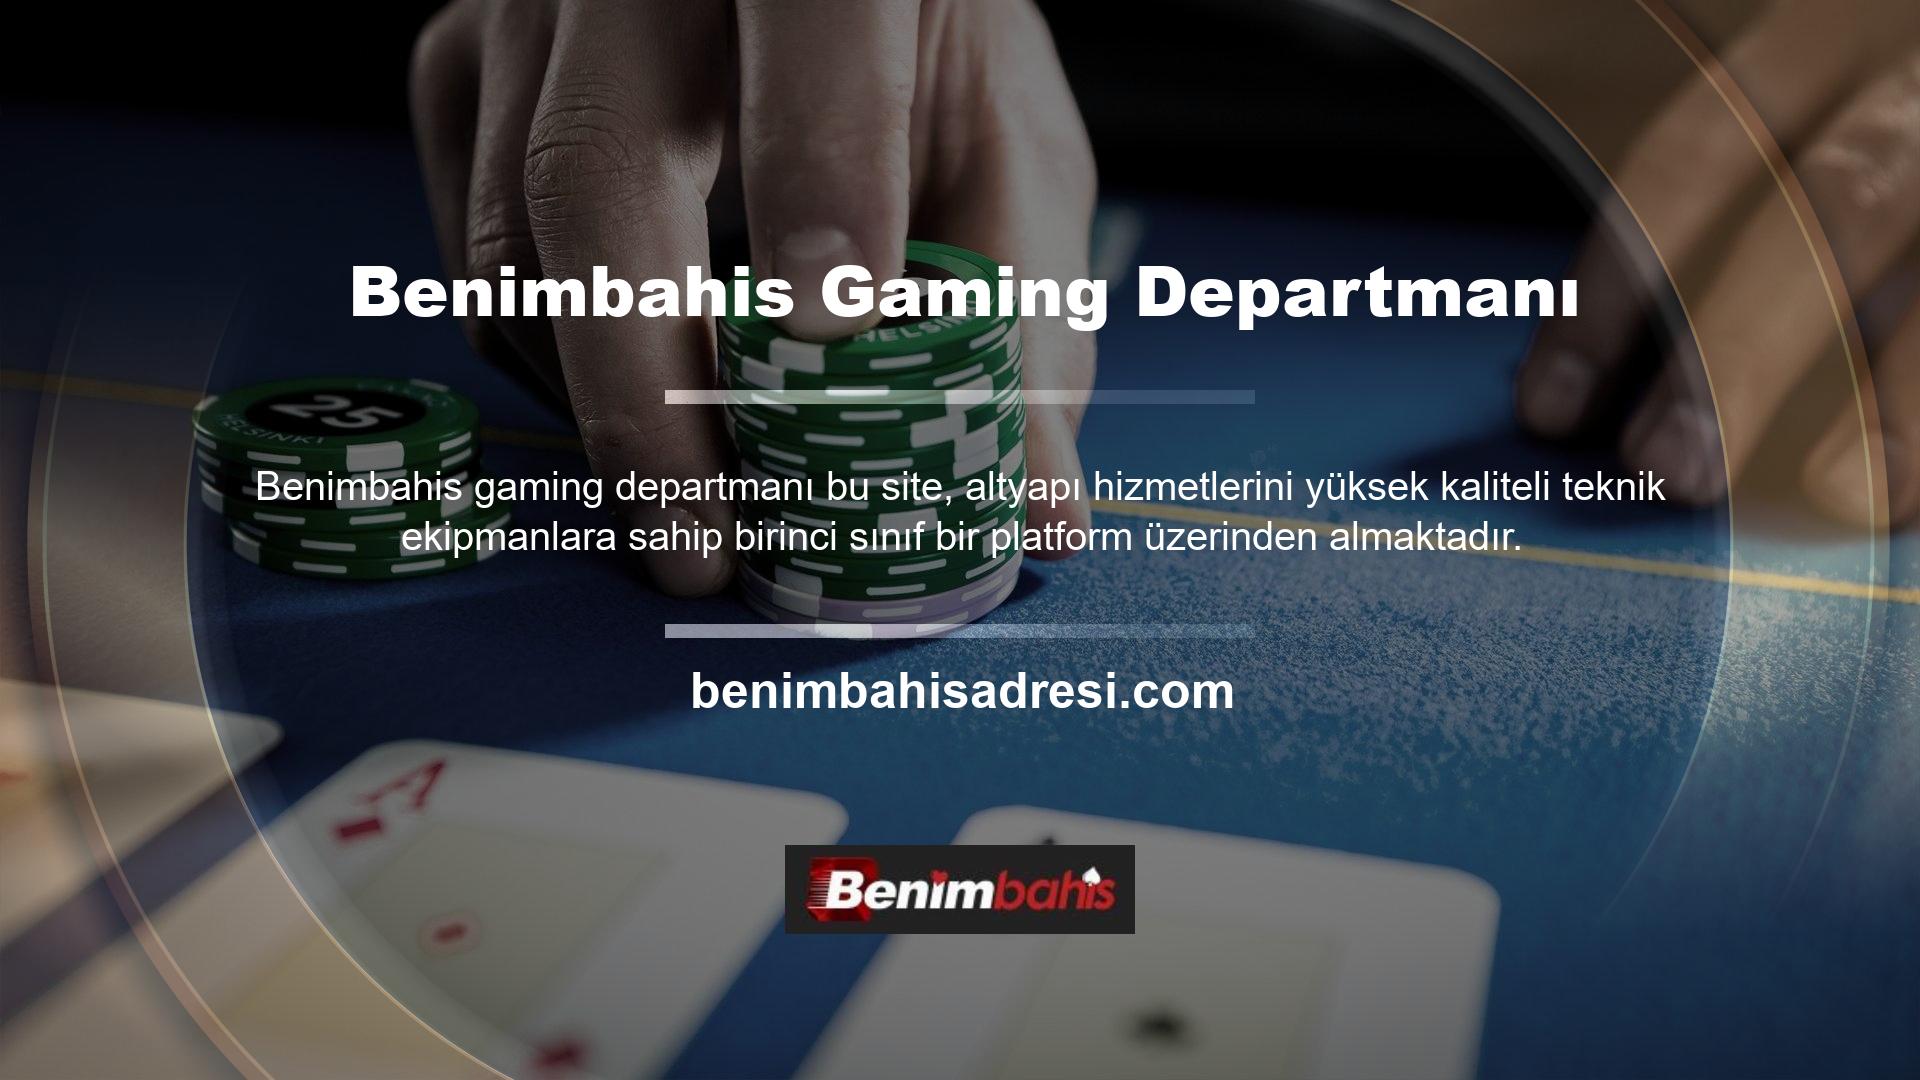 Benimbahis web sitesi uzun yıllardan beri küresel casino pazarında yer almaktadır ancak Türkiye pazarına henüz yeni girmiştir